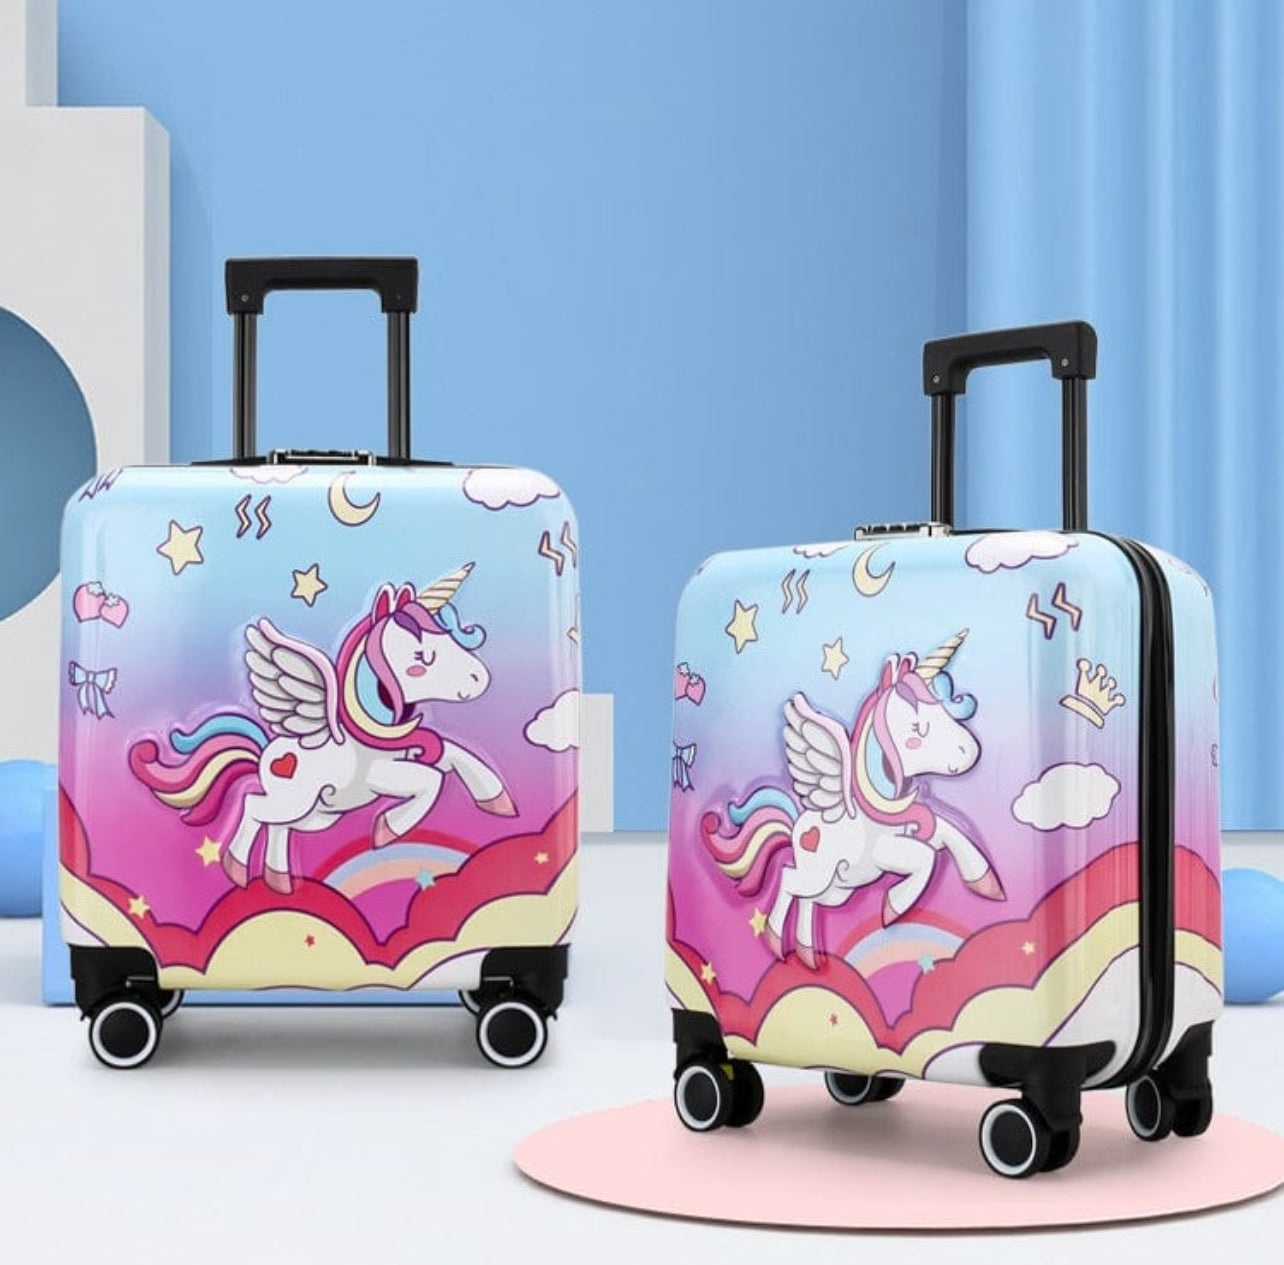 Sanushaa Trolley Bag Cover 75 cm Multicolour I Luggage Cover